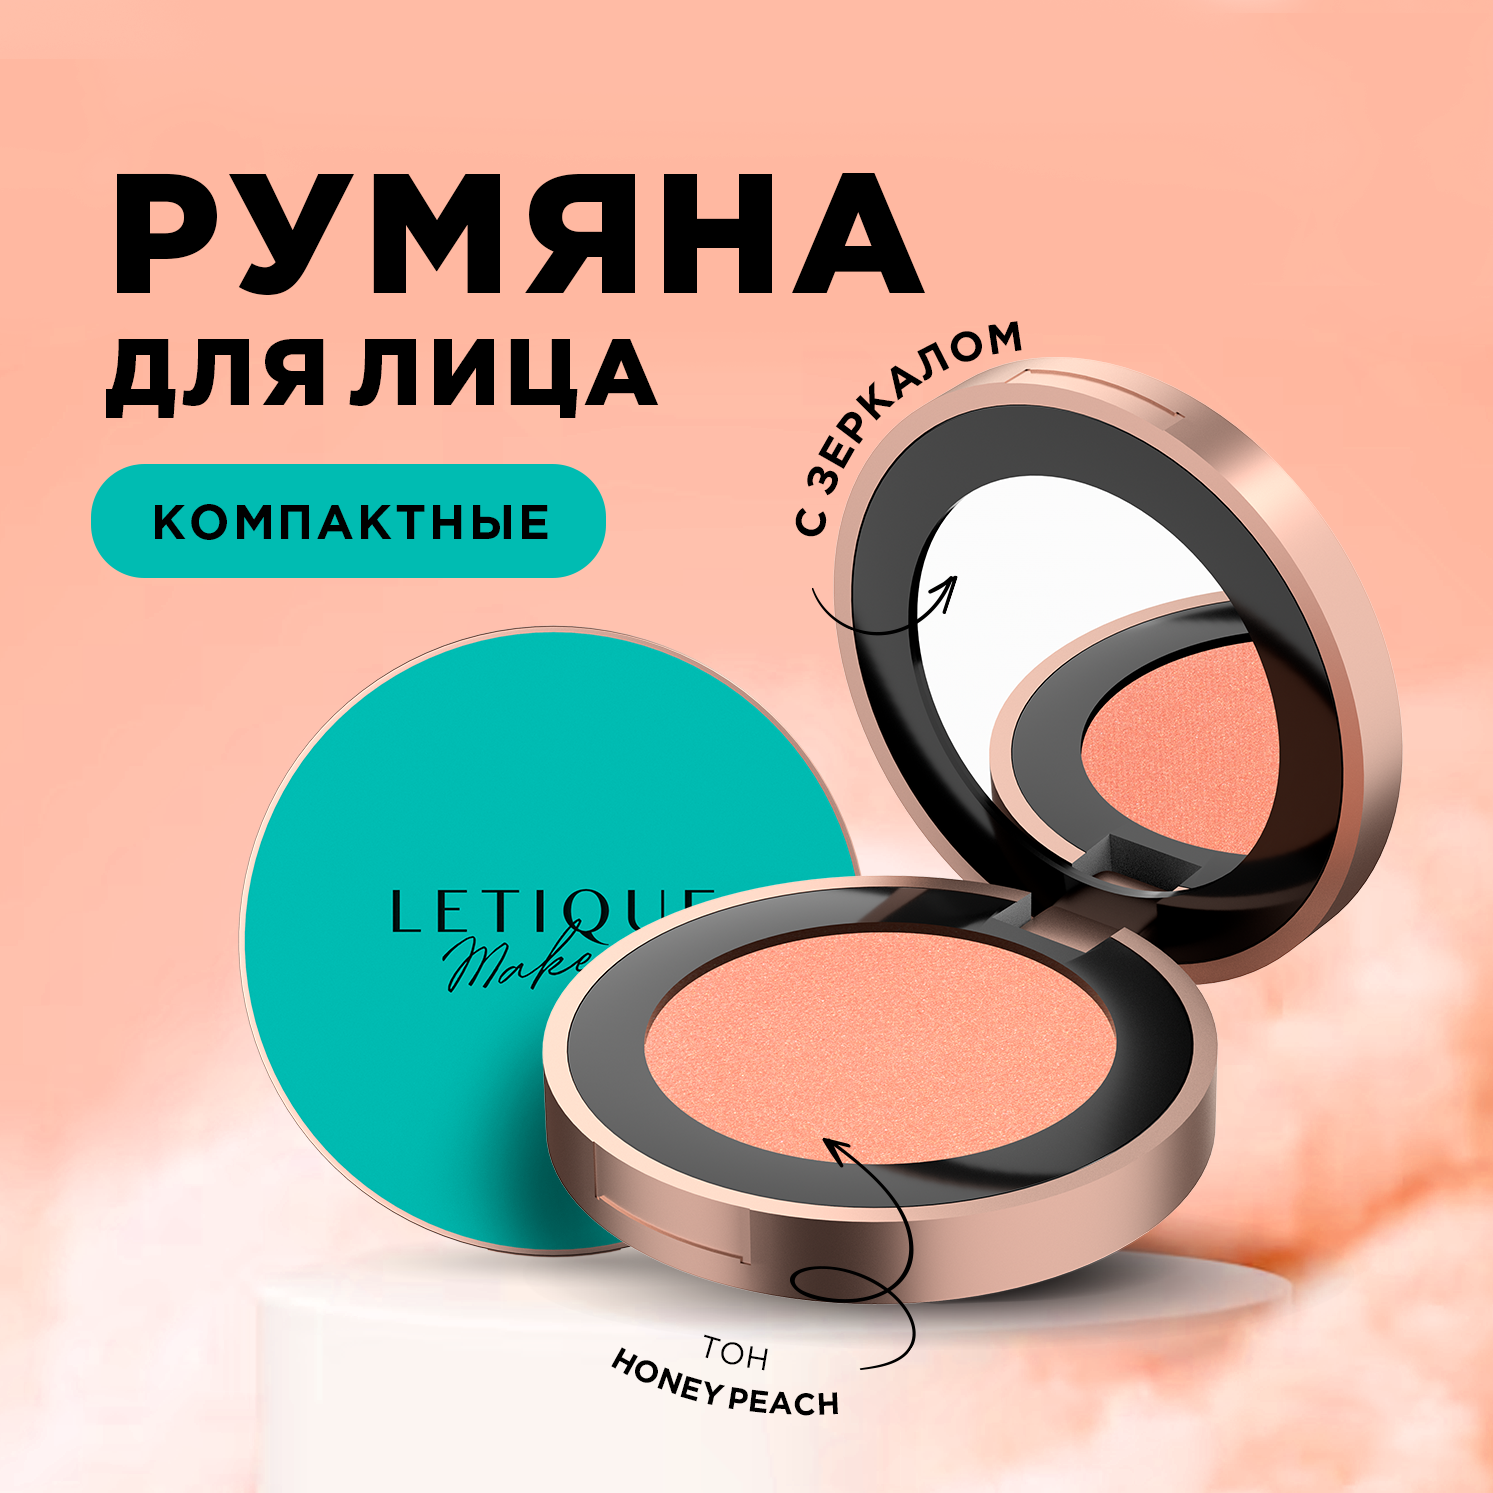 Компактные Румяна Для Лица Letique Cosmetics Bliss Touch Тон Honey Peach